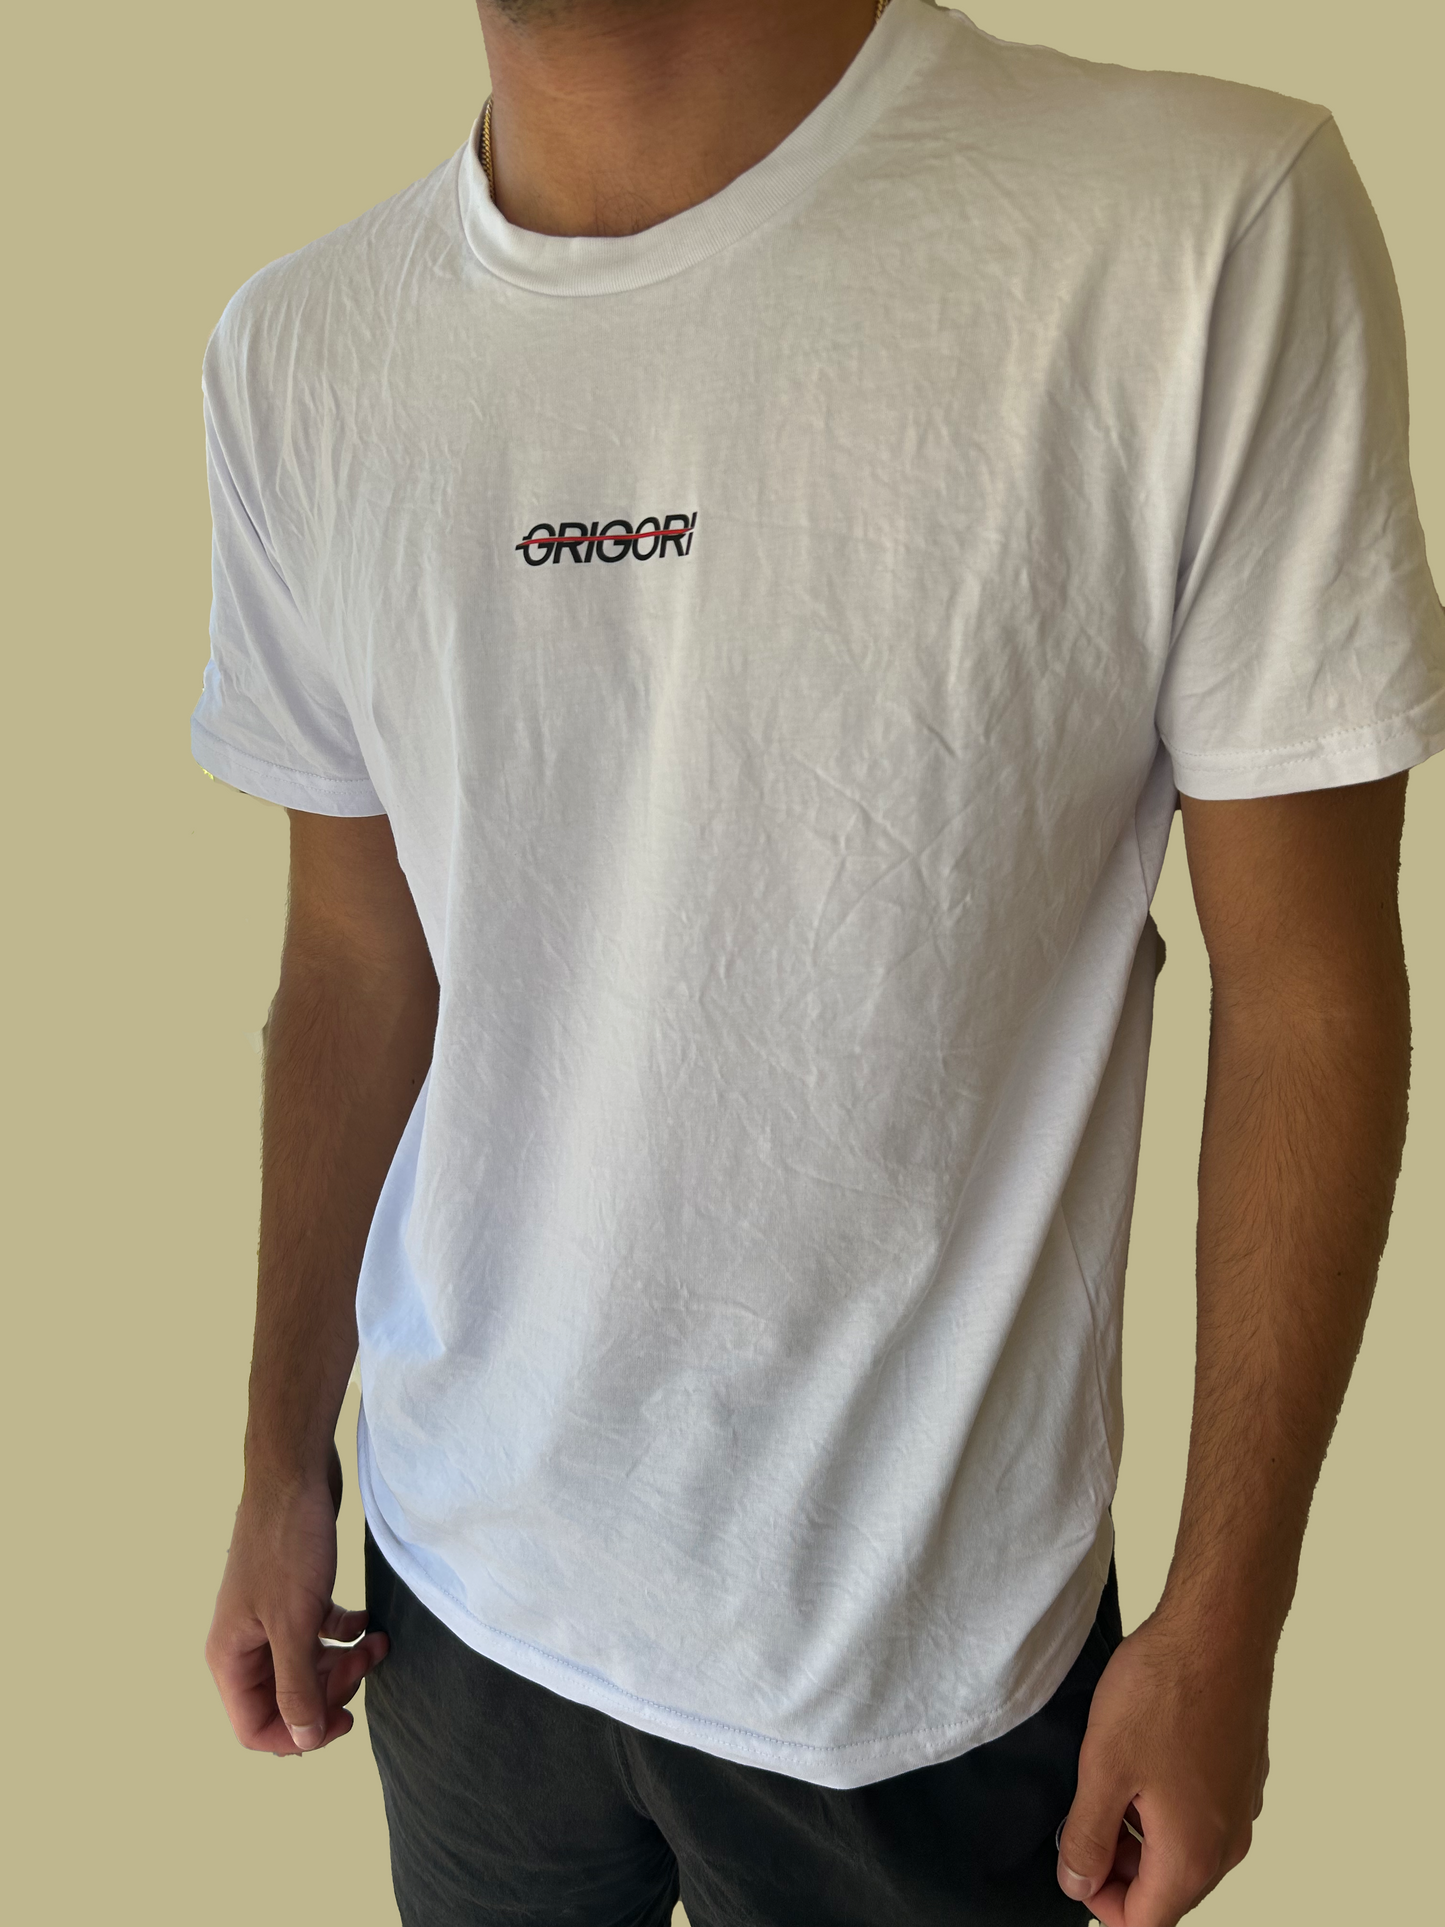 Grigori Mens Essential T-Shirt